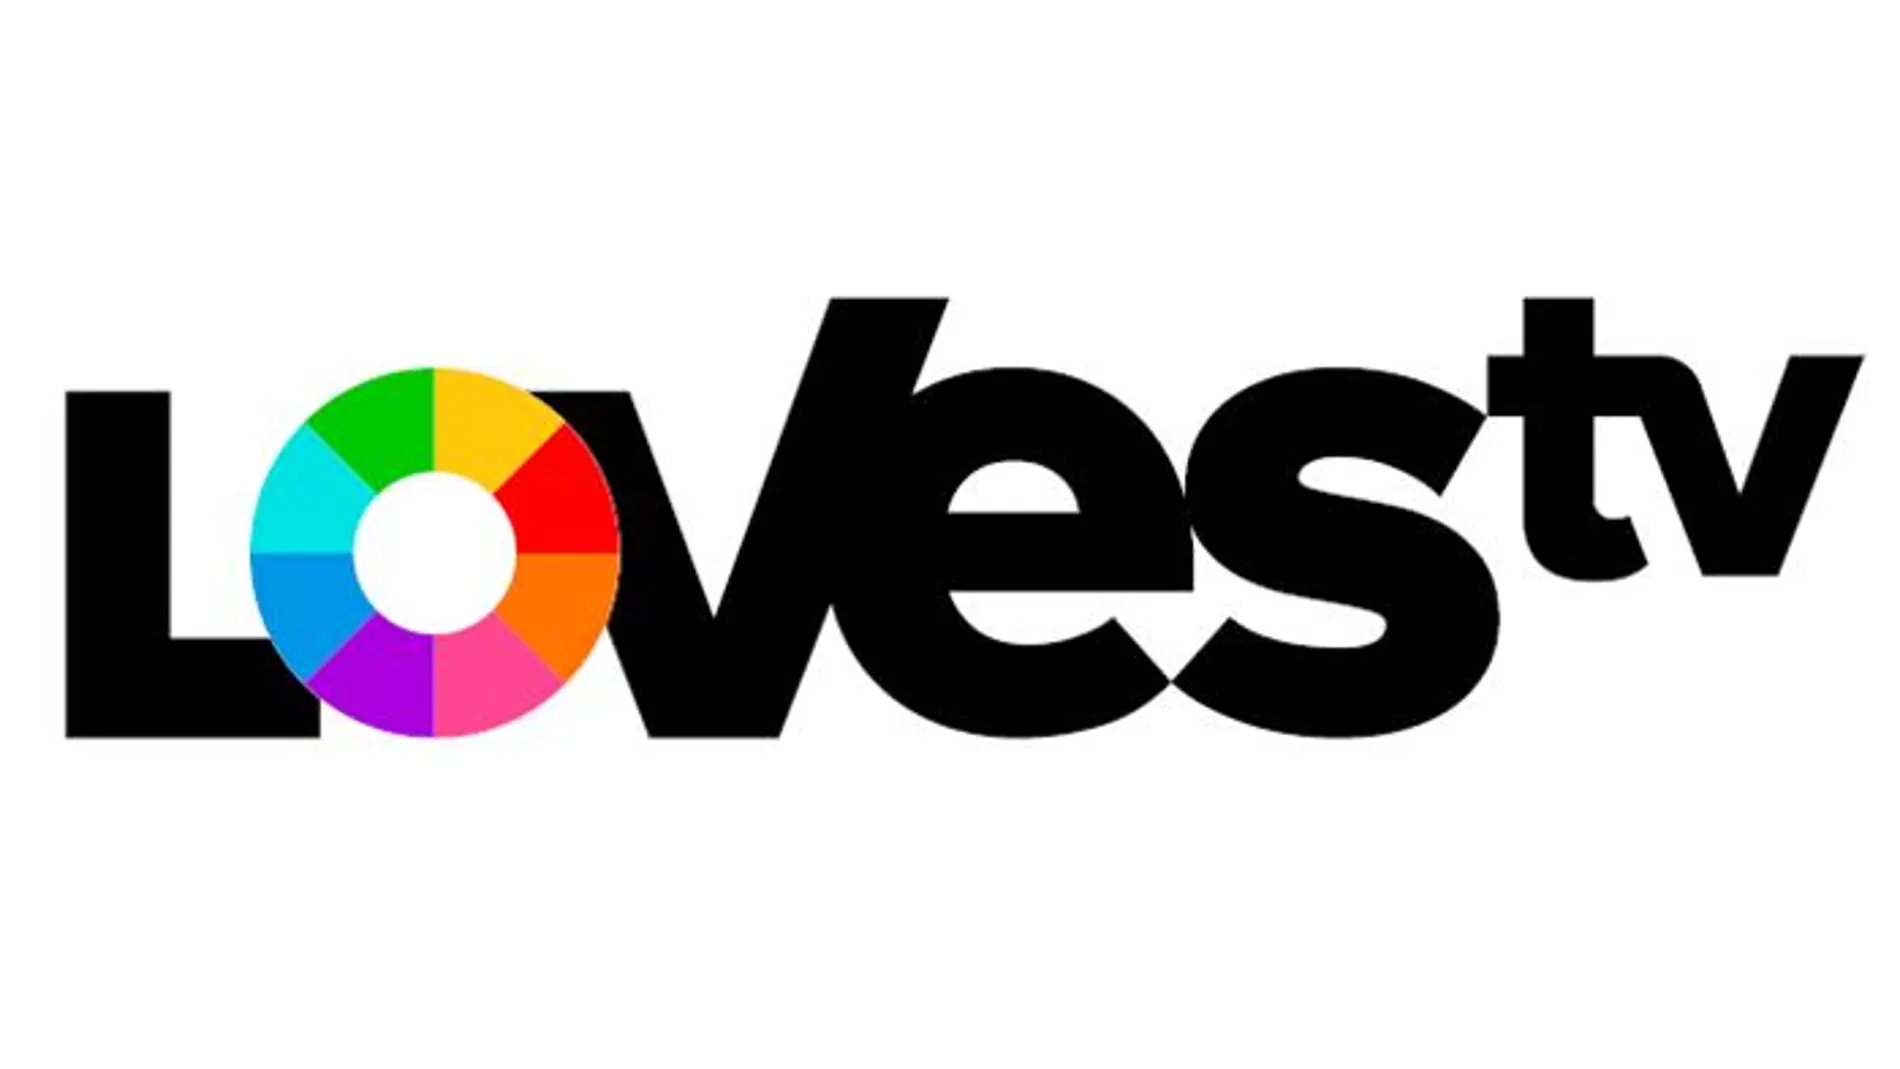 LOVEStv arranca sus emisiones en pruebas